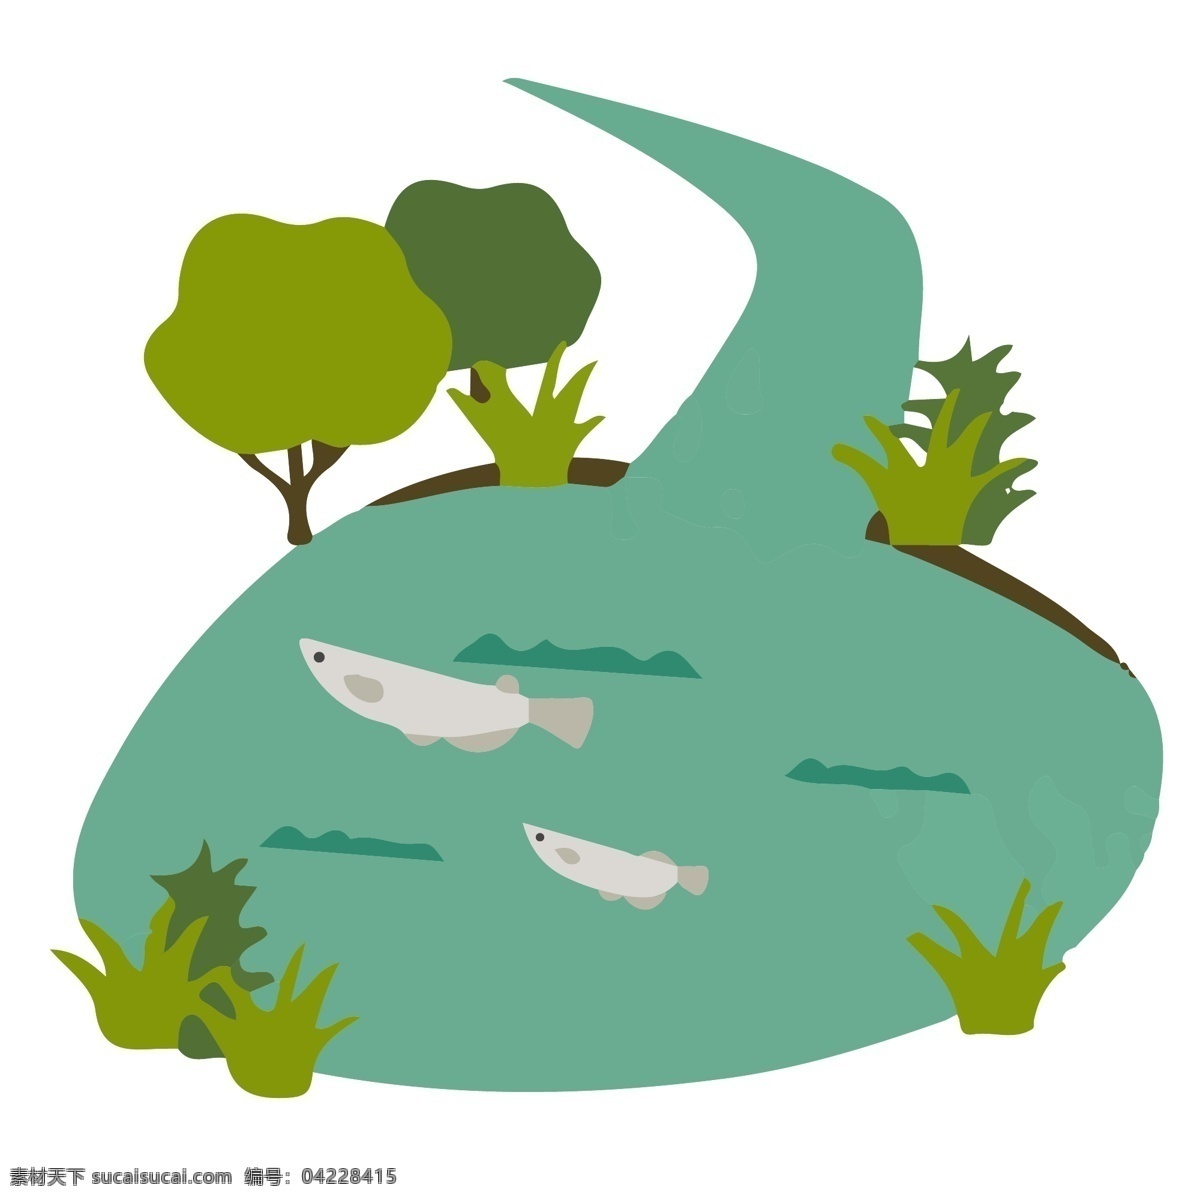 植物 游玩 儿童 保护 环境 类 插画 系列 套 图 池塘 自然 可爱 鱼 城市元素 扁平插画